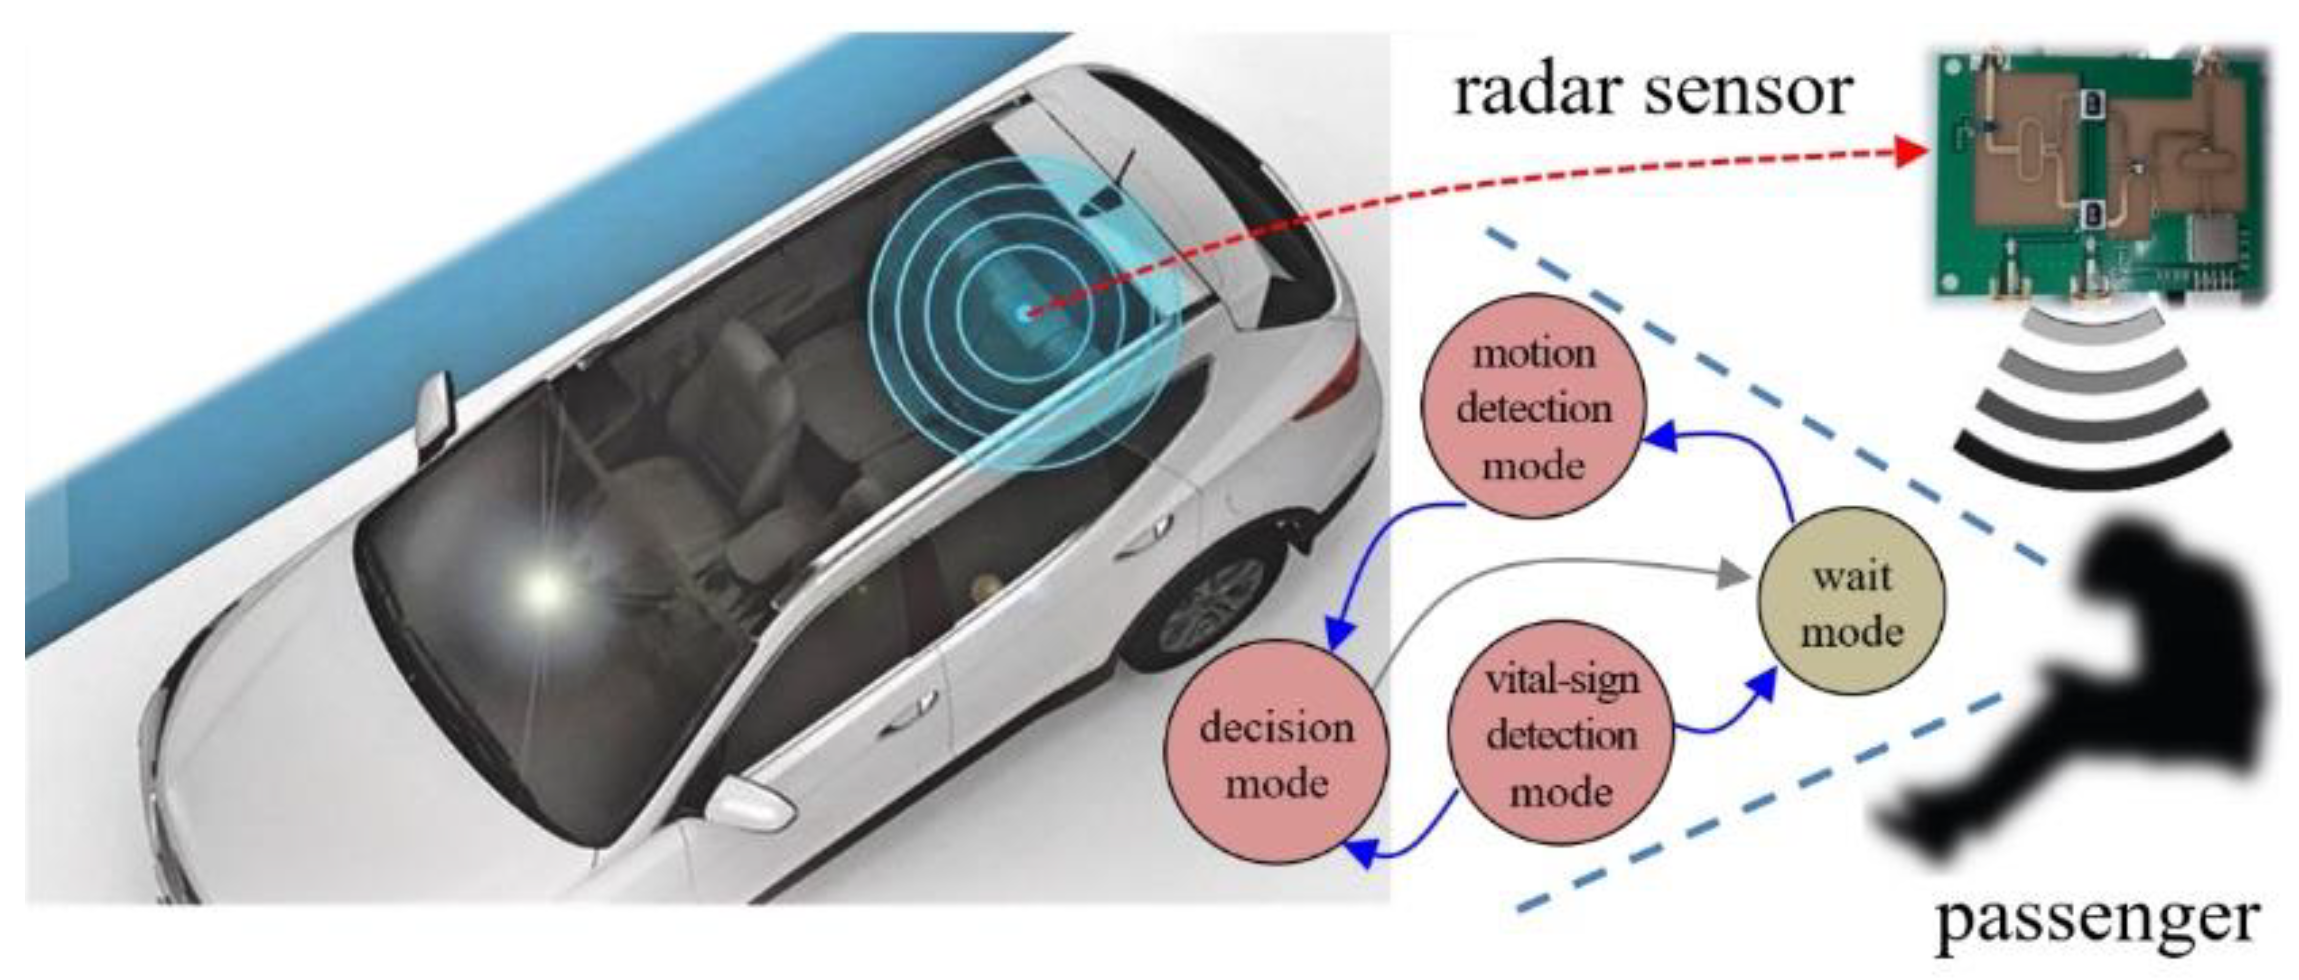 Radar Sensor Vr10 Zkteco S New Vehicle Detection Radar Sensor For